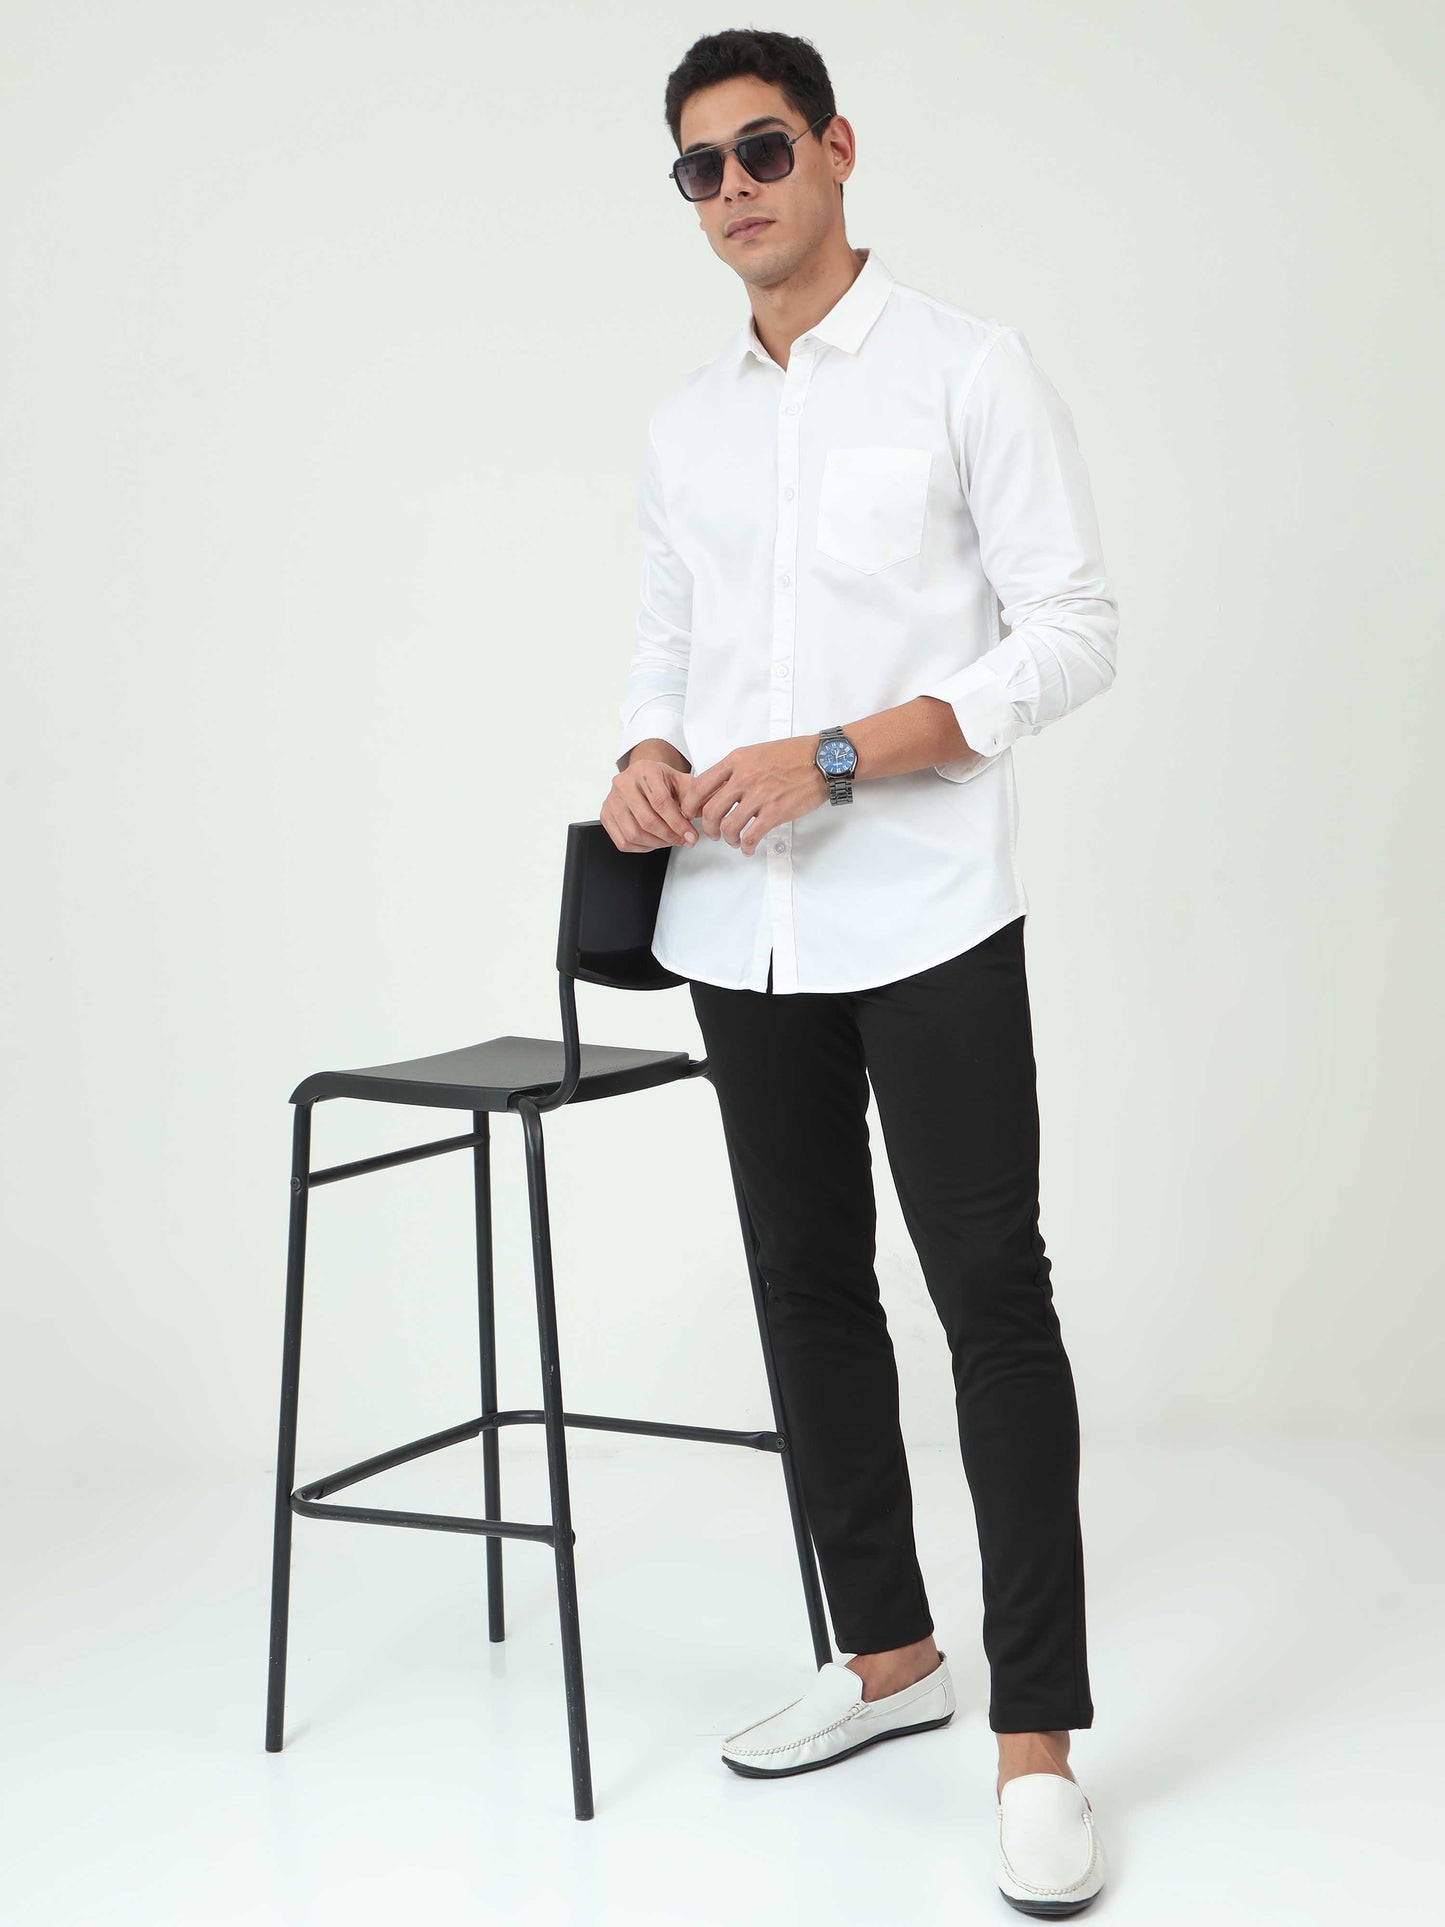 One-tone White Satin shirt for Men 